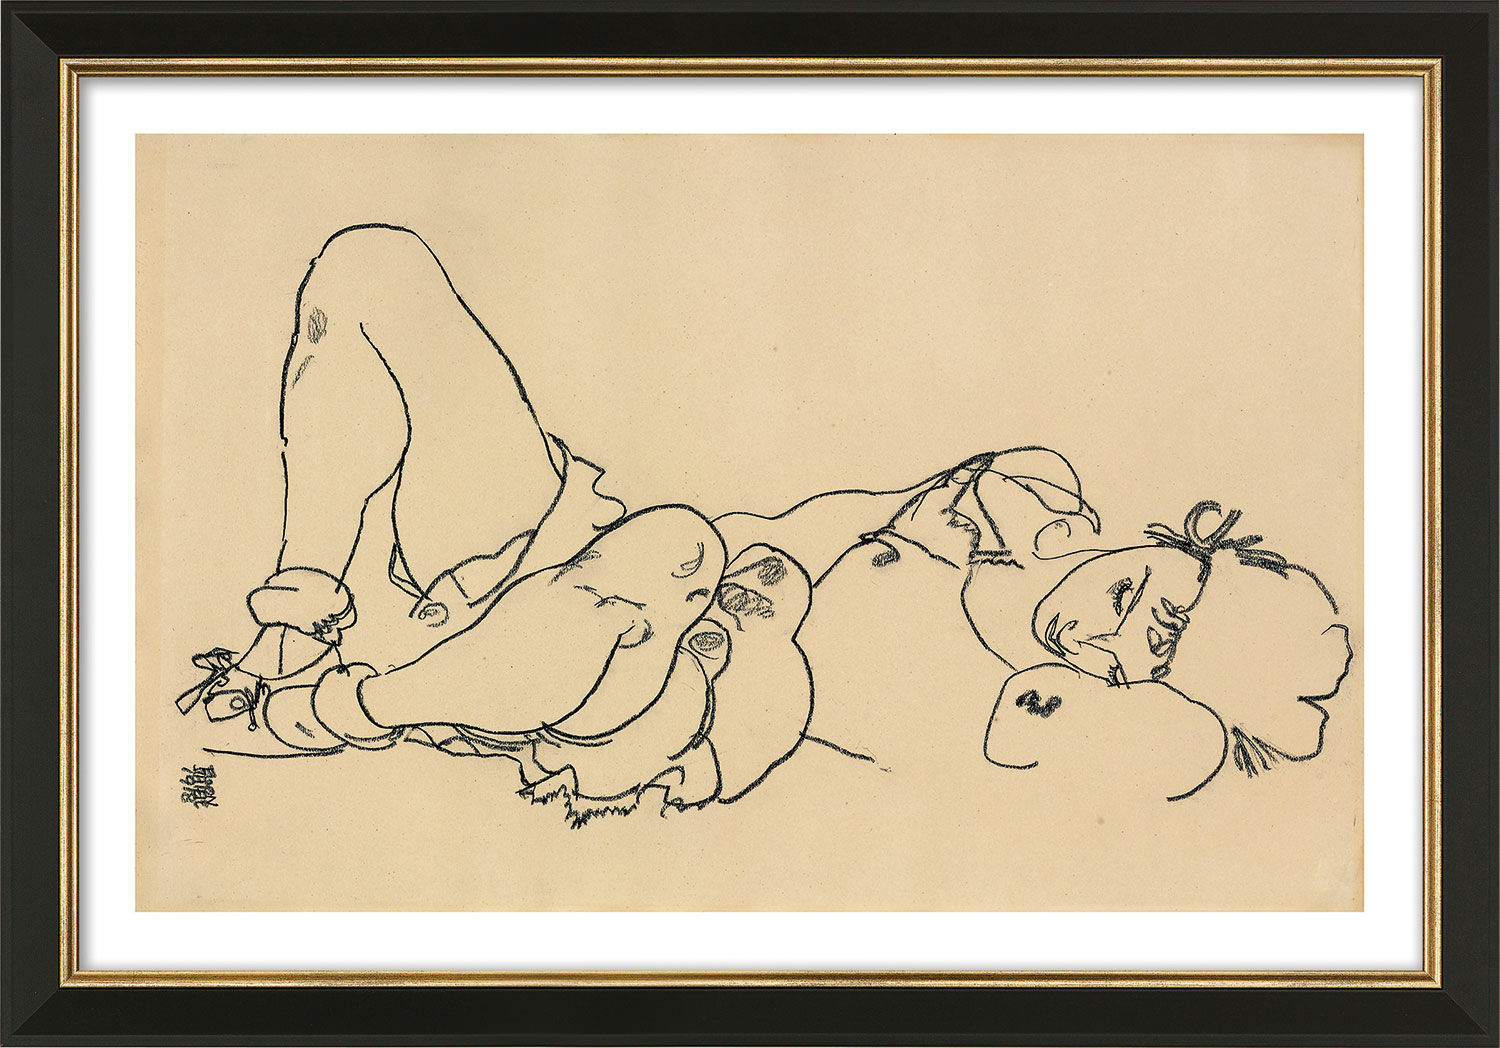 Tableau "Femme couchée" (1918), encadré von Egon Schiele